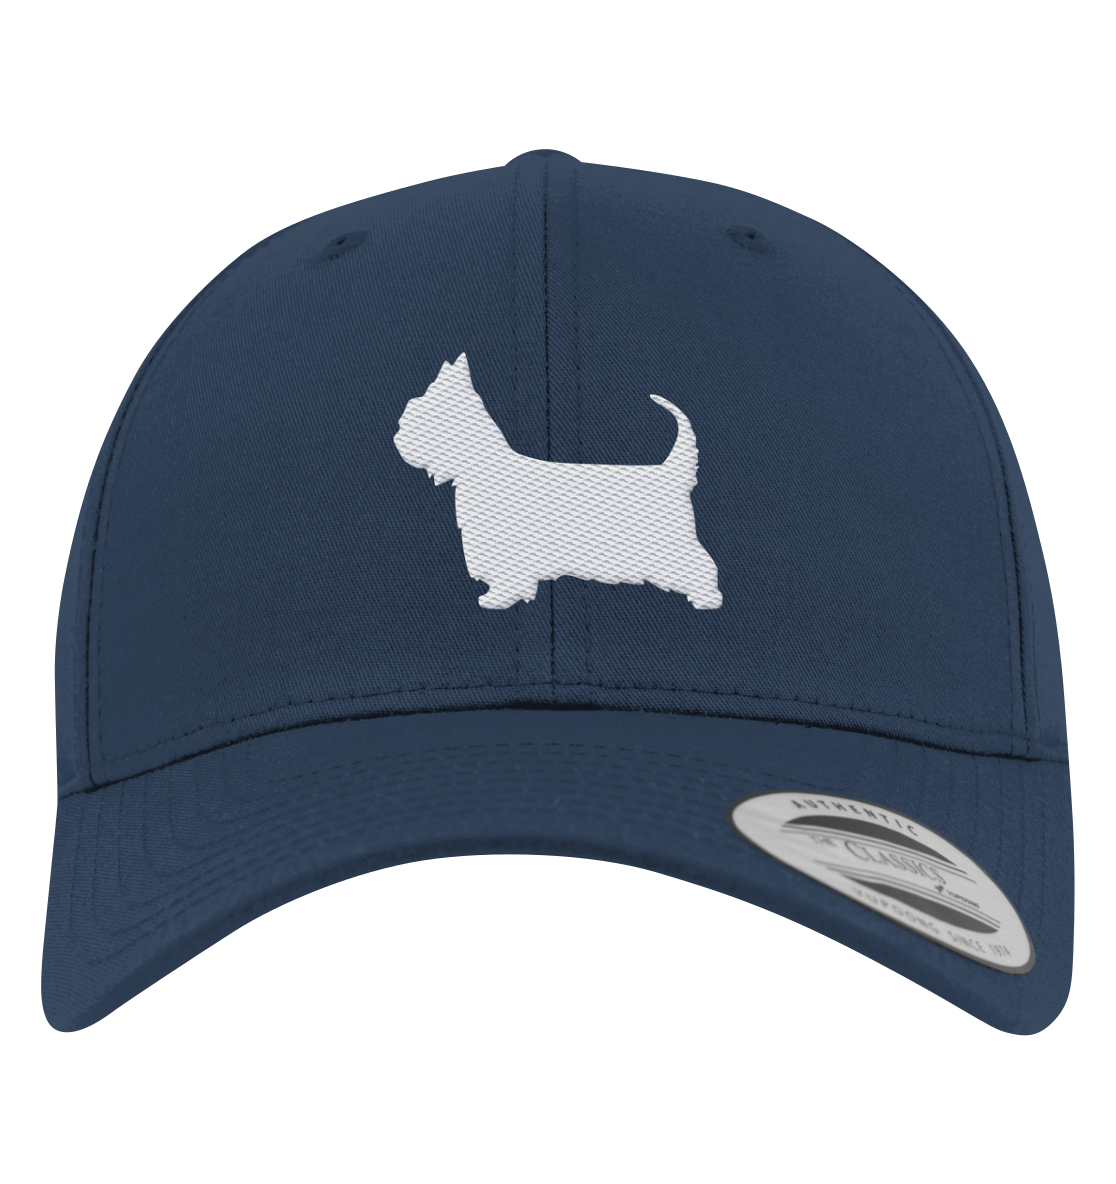 Australian Silky Terrier-Silhouette - Premium Baseball Cap